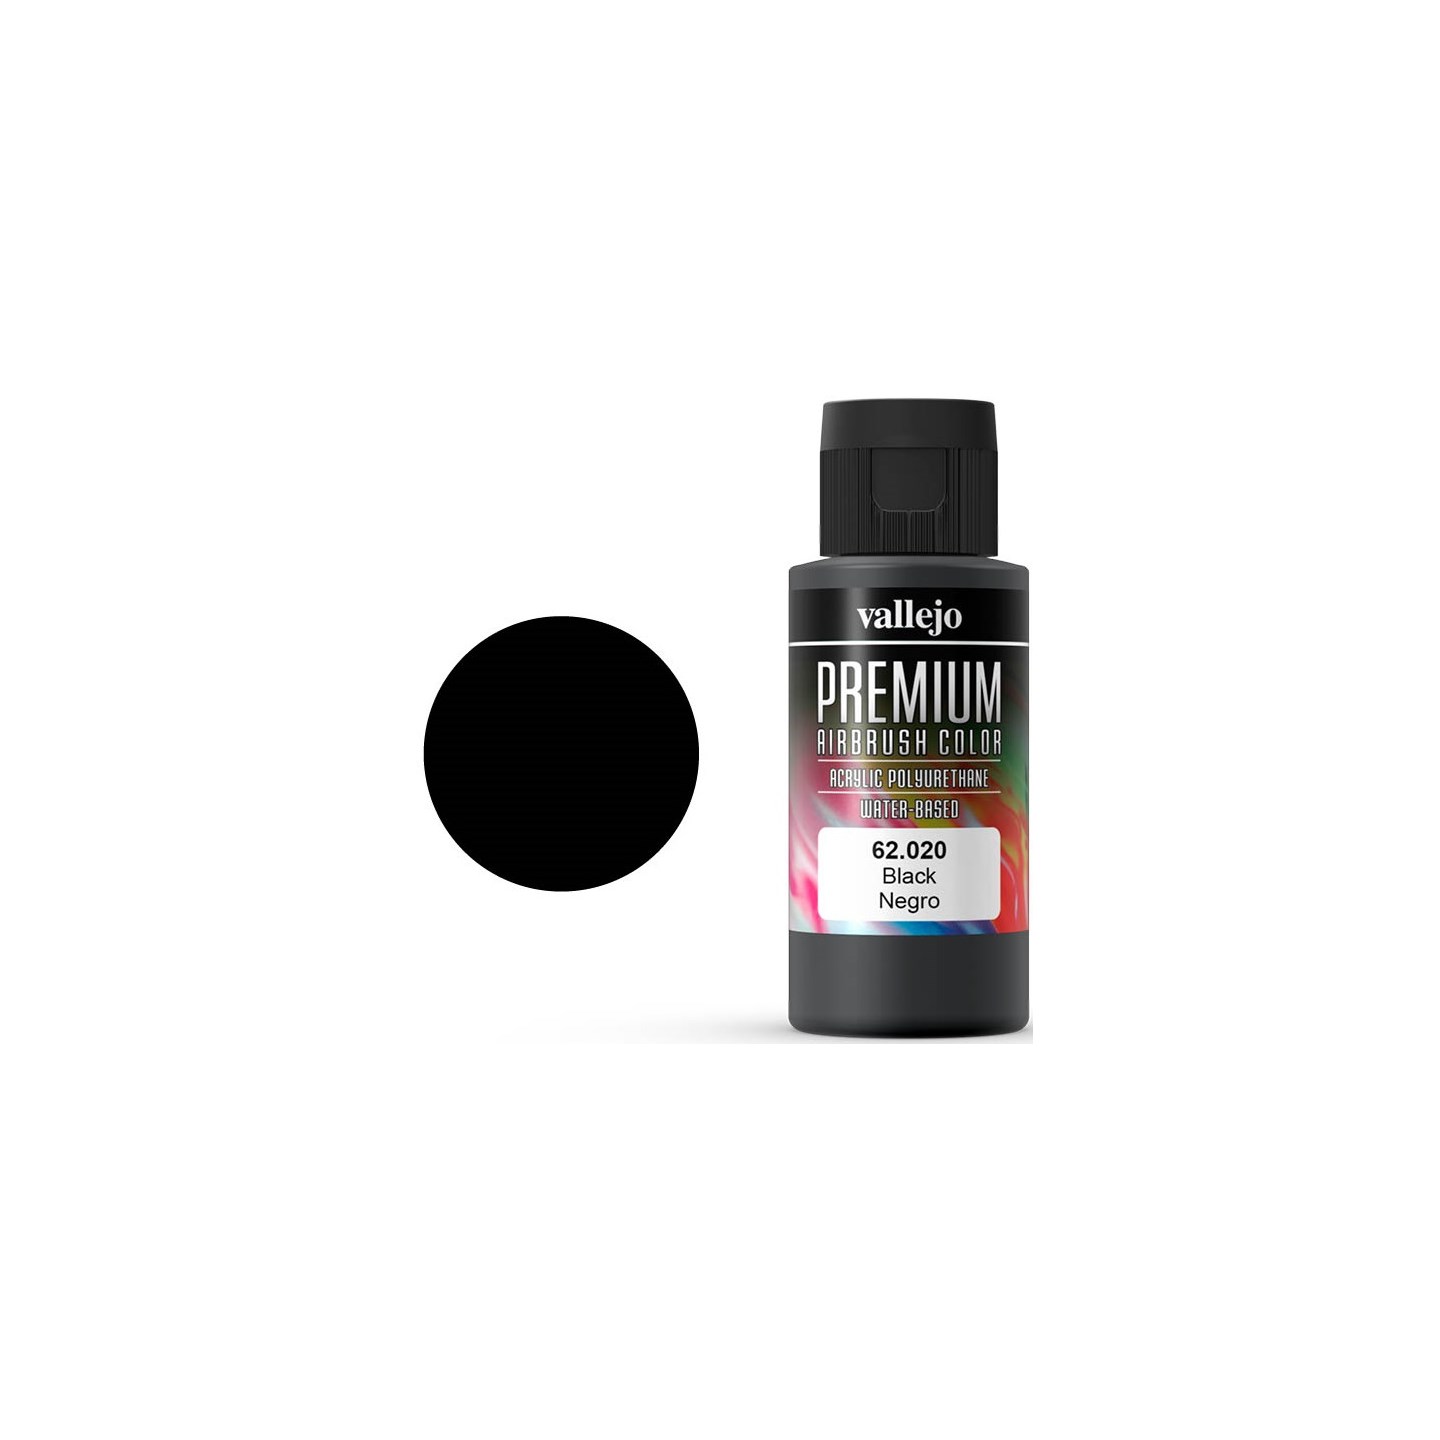 Vallejo Premium Basic Black 60ml Premium Airbrush Color